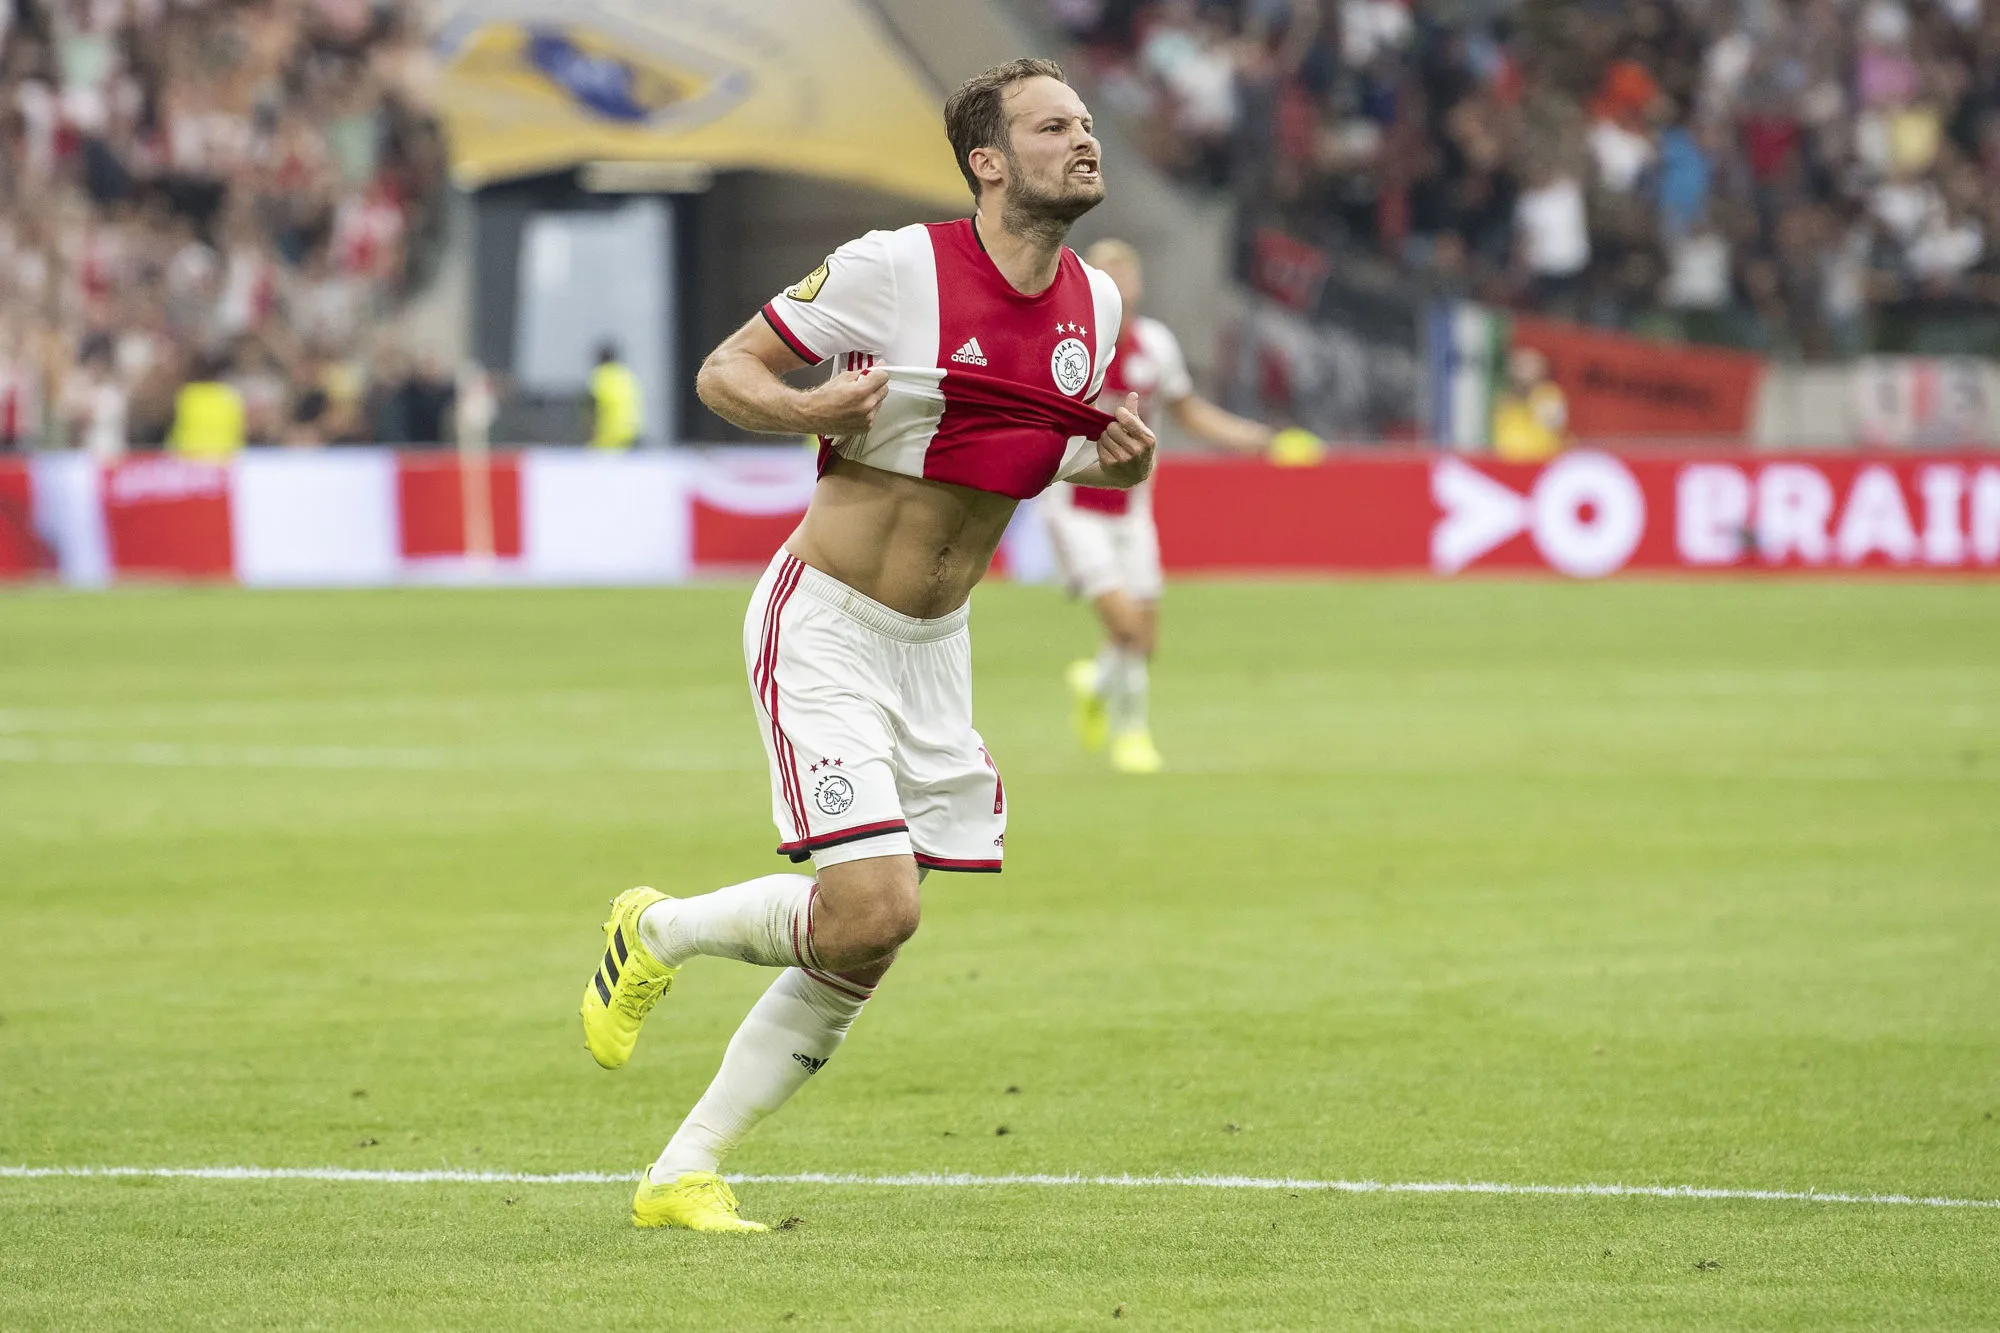 Pronostic Ajax Chelsea : Analyse, prono et cotes du match de Ligue des Champions